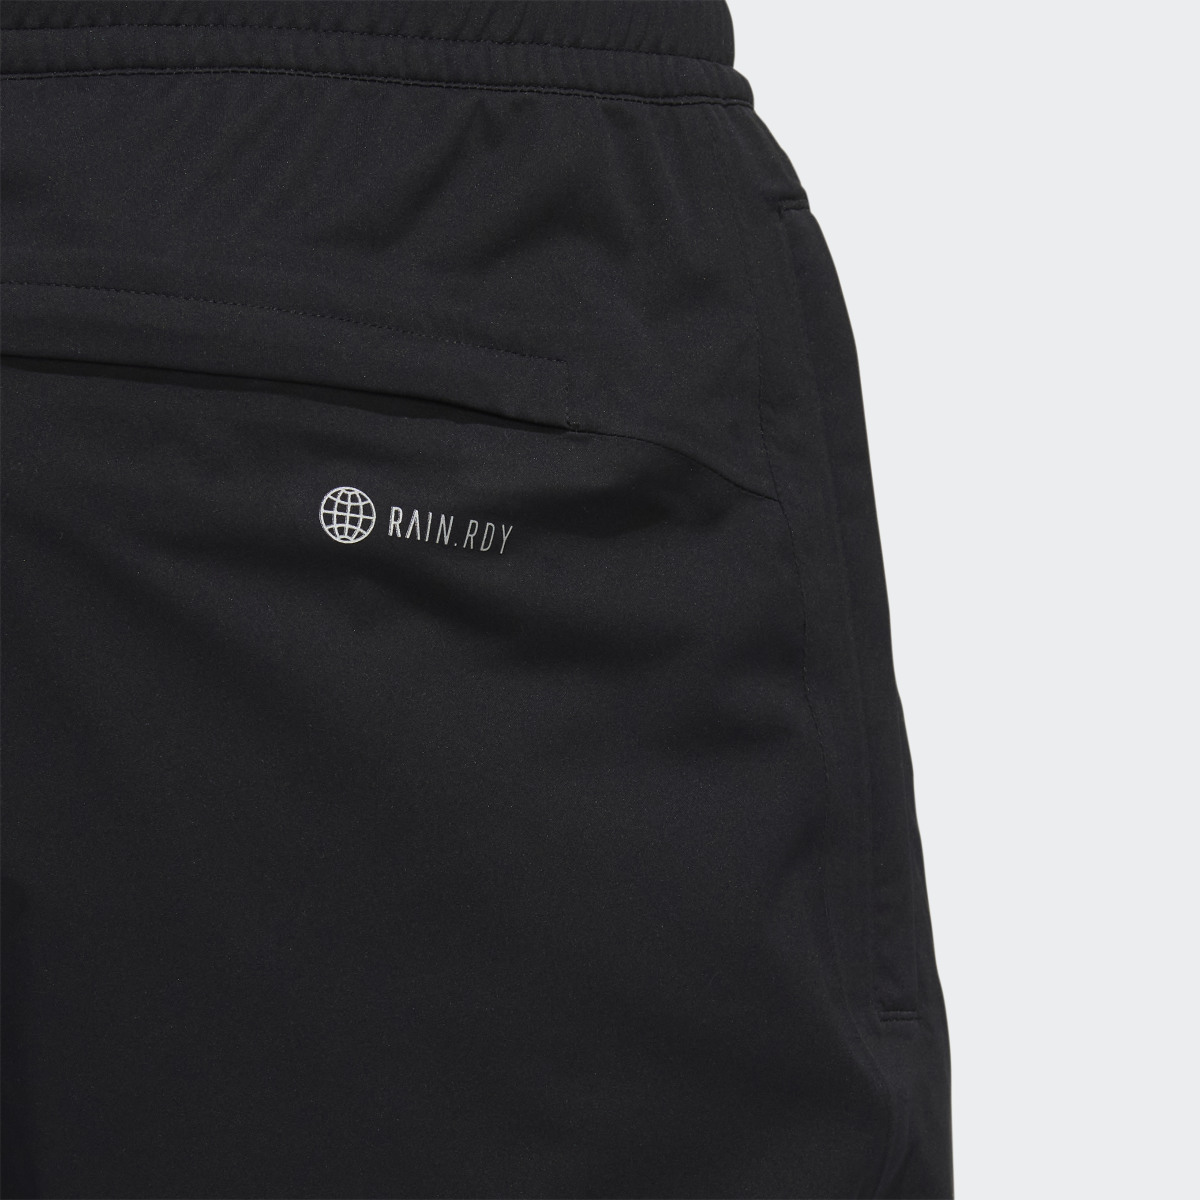 Adidas RAIN.RDY Golf Trousers. 7